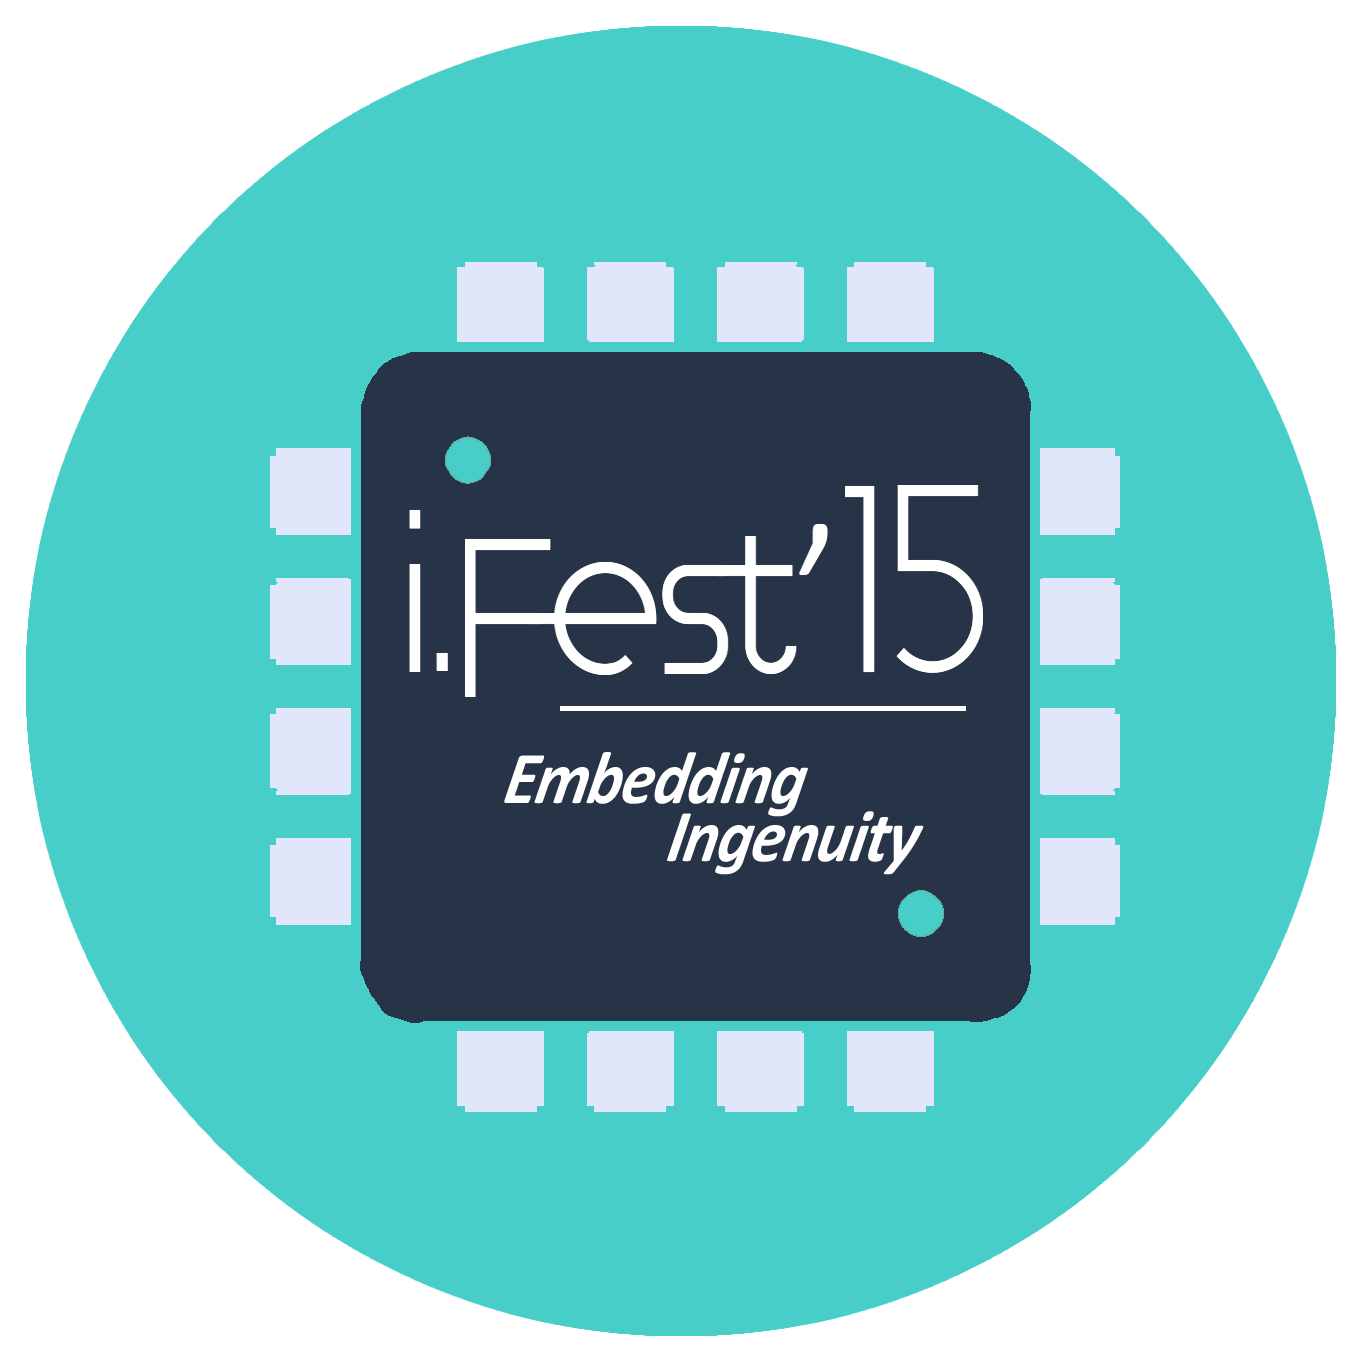 I.Fest '15 - Embedding Ingenuity